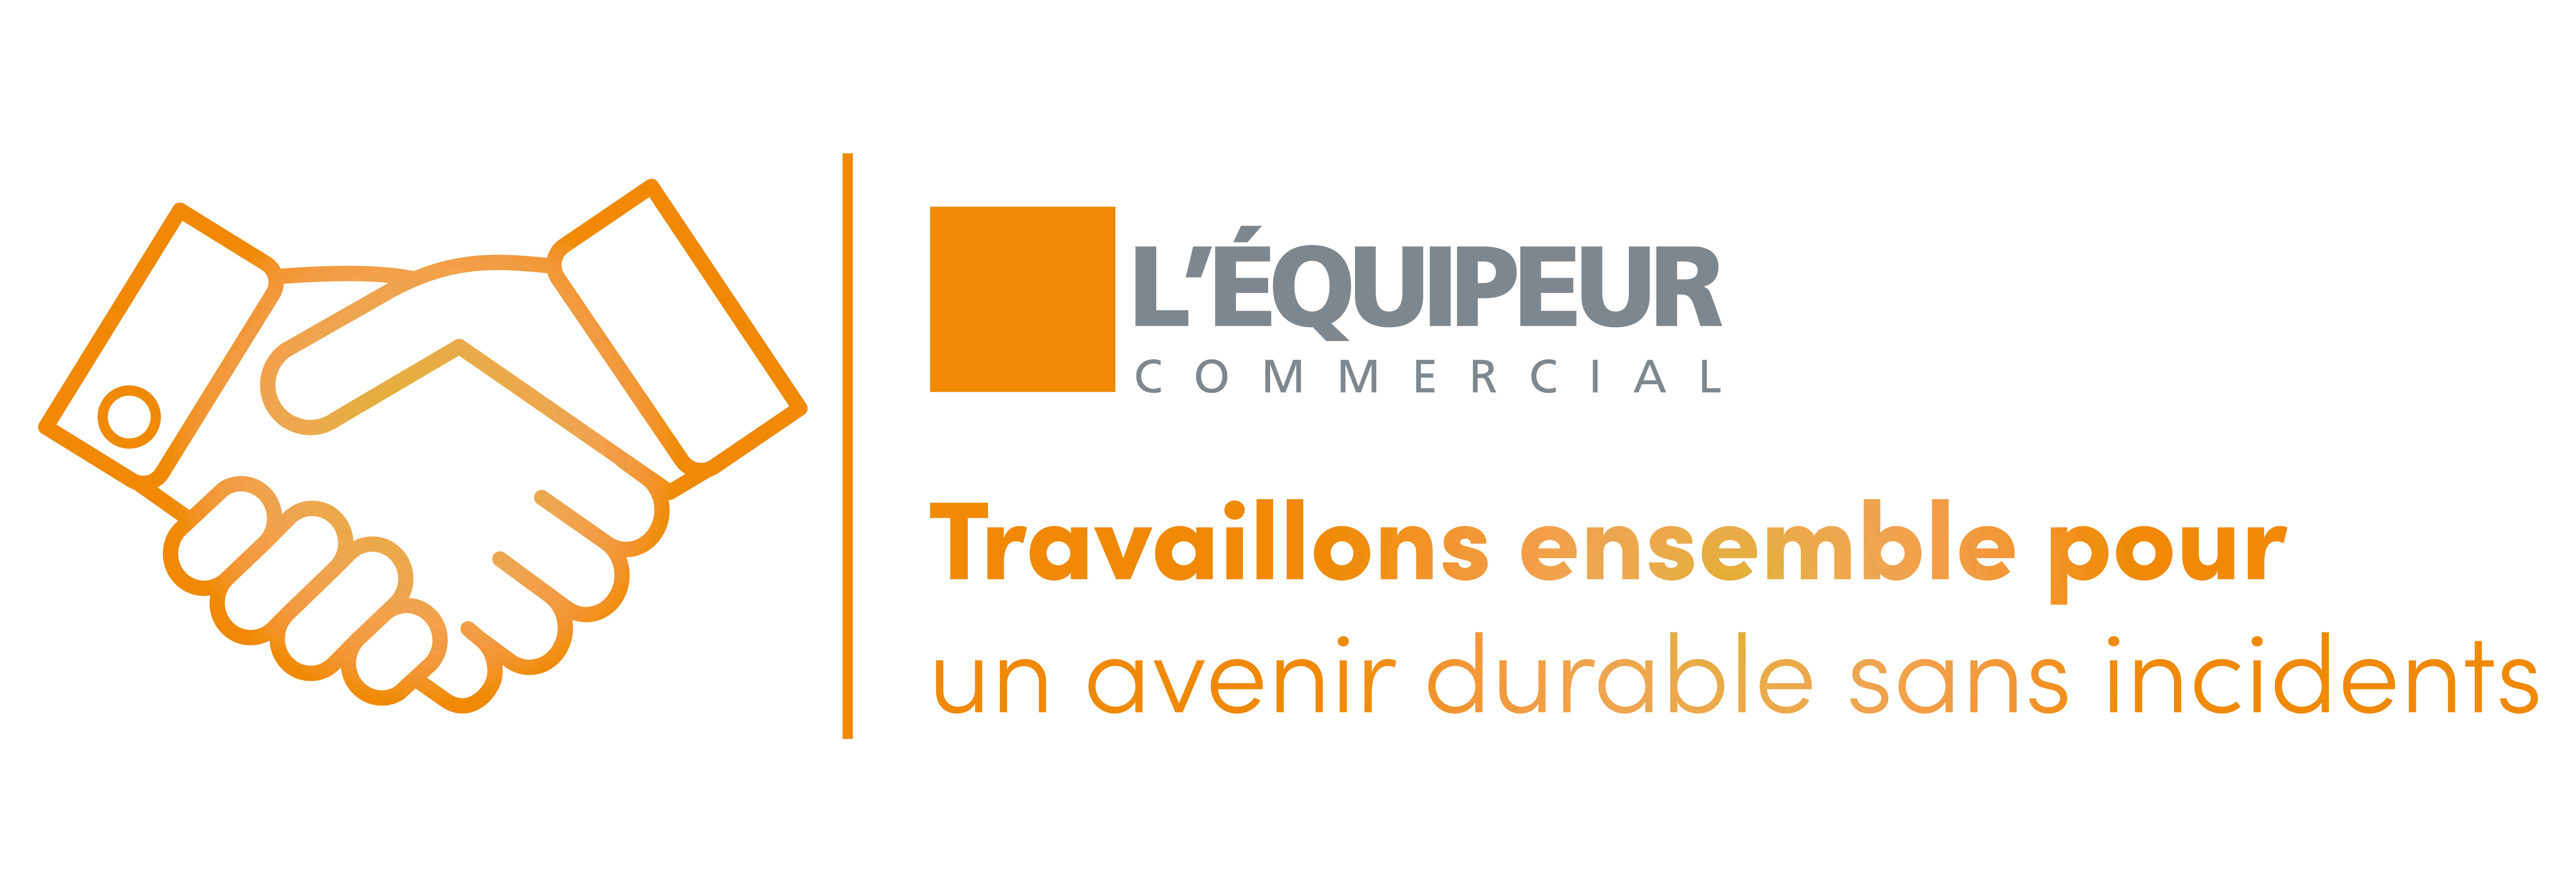 L’Équipeur Commercial in color